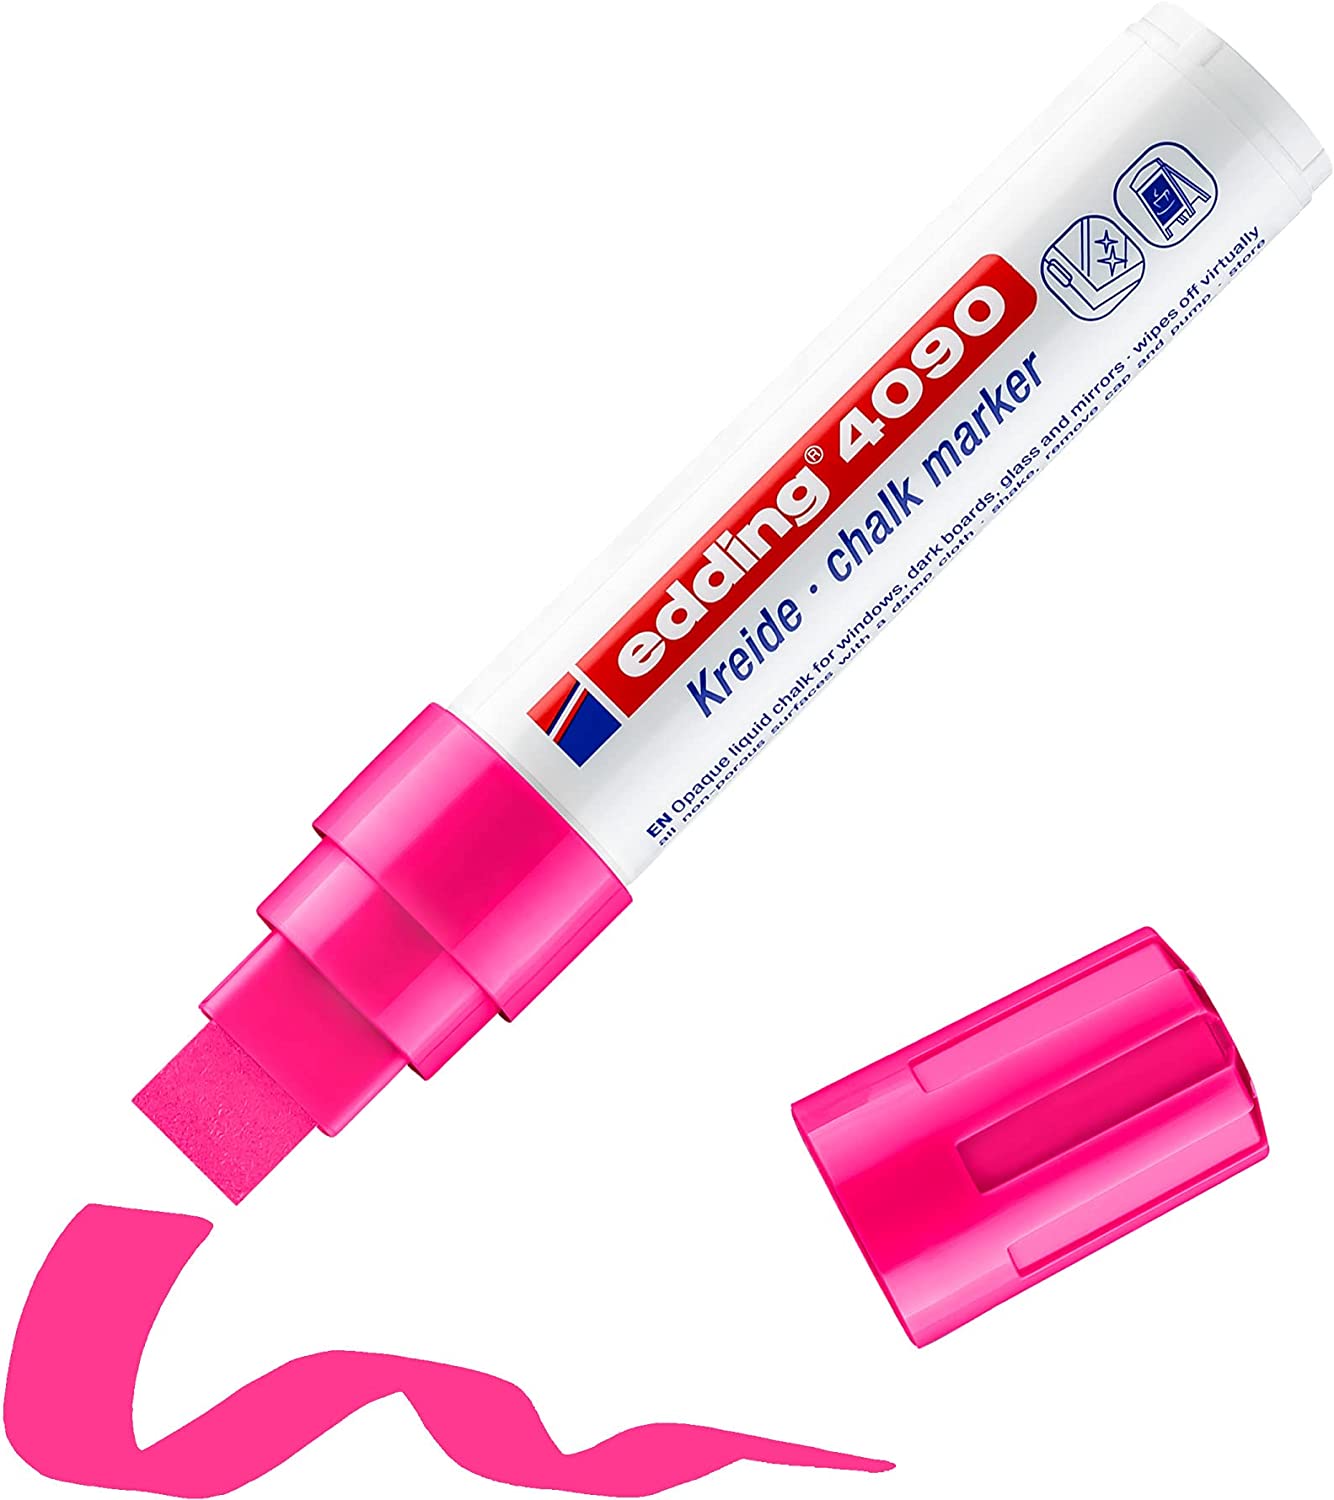 Edding 4090 Marqueur Craie Liquide - Pointe Biseautée - Trait Entre 4 et 15mm - Odeur Neutre - Couleur Rose Fluo